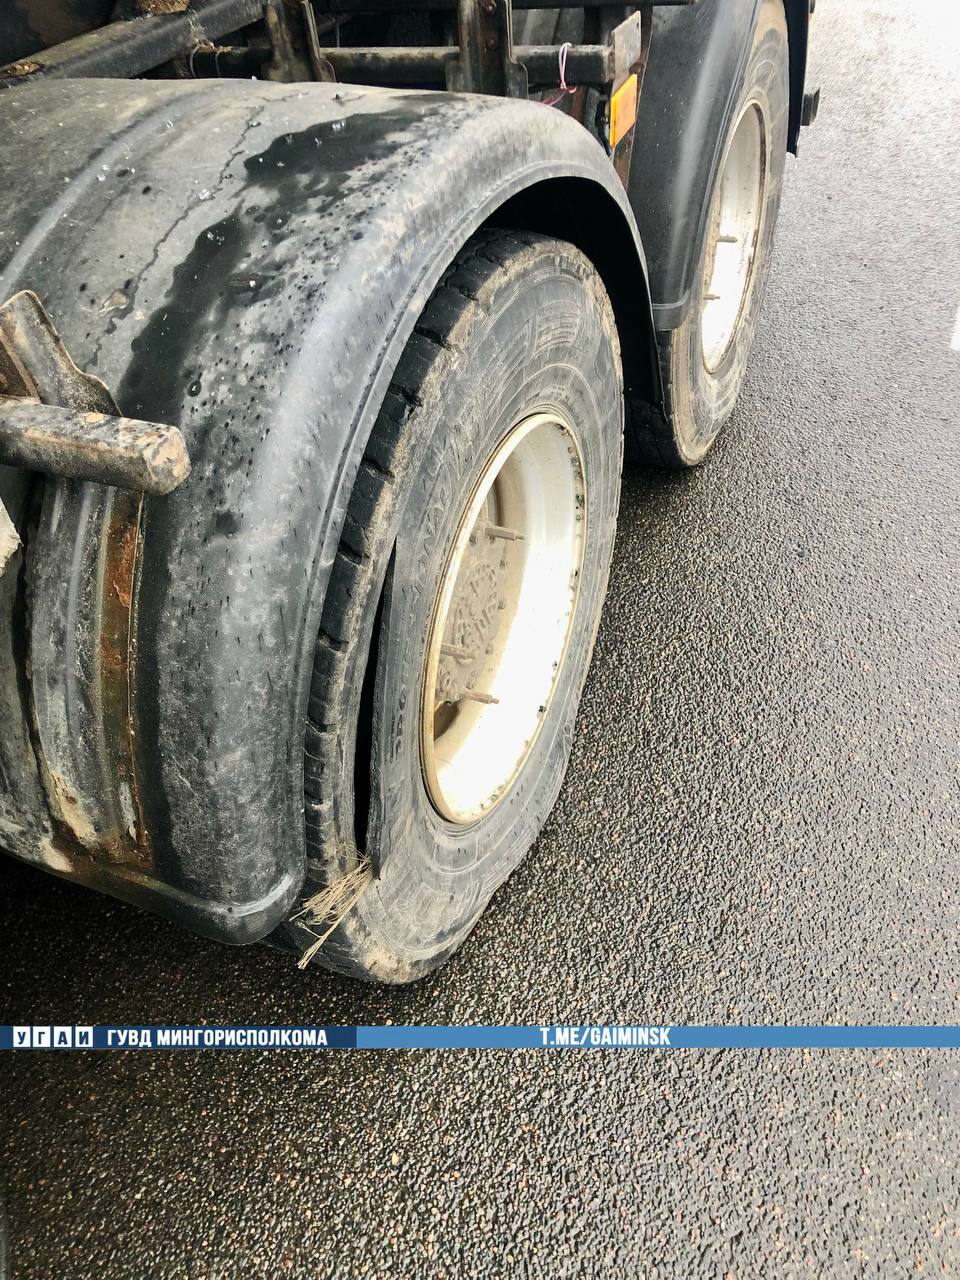 У самосвала в Минске лопнуло колесо, воздухом выбило стекла проезжавшей мимо маршрутки